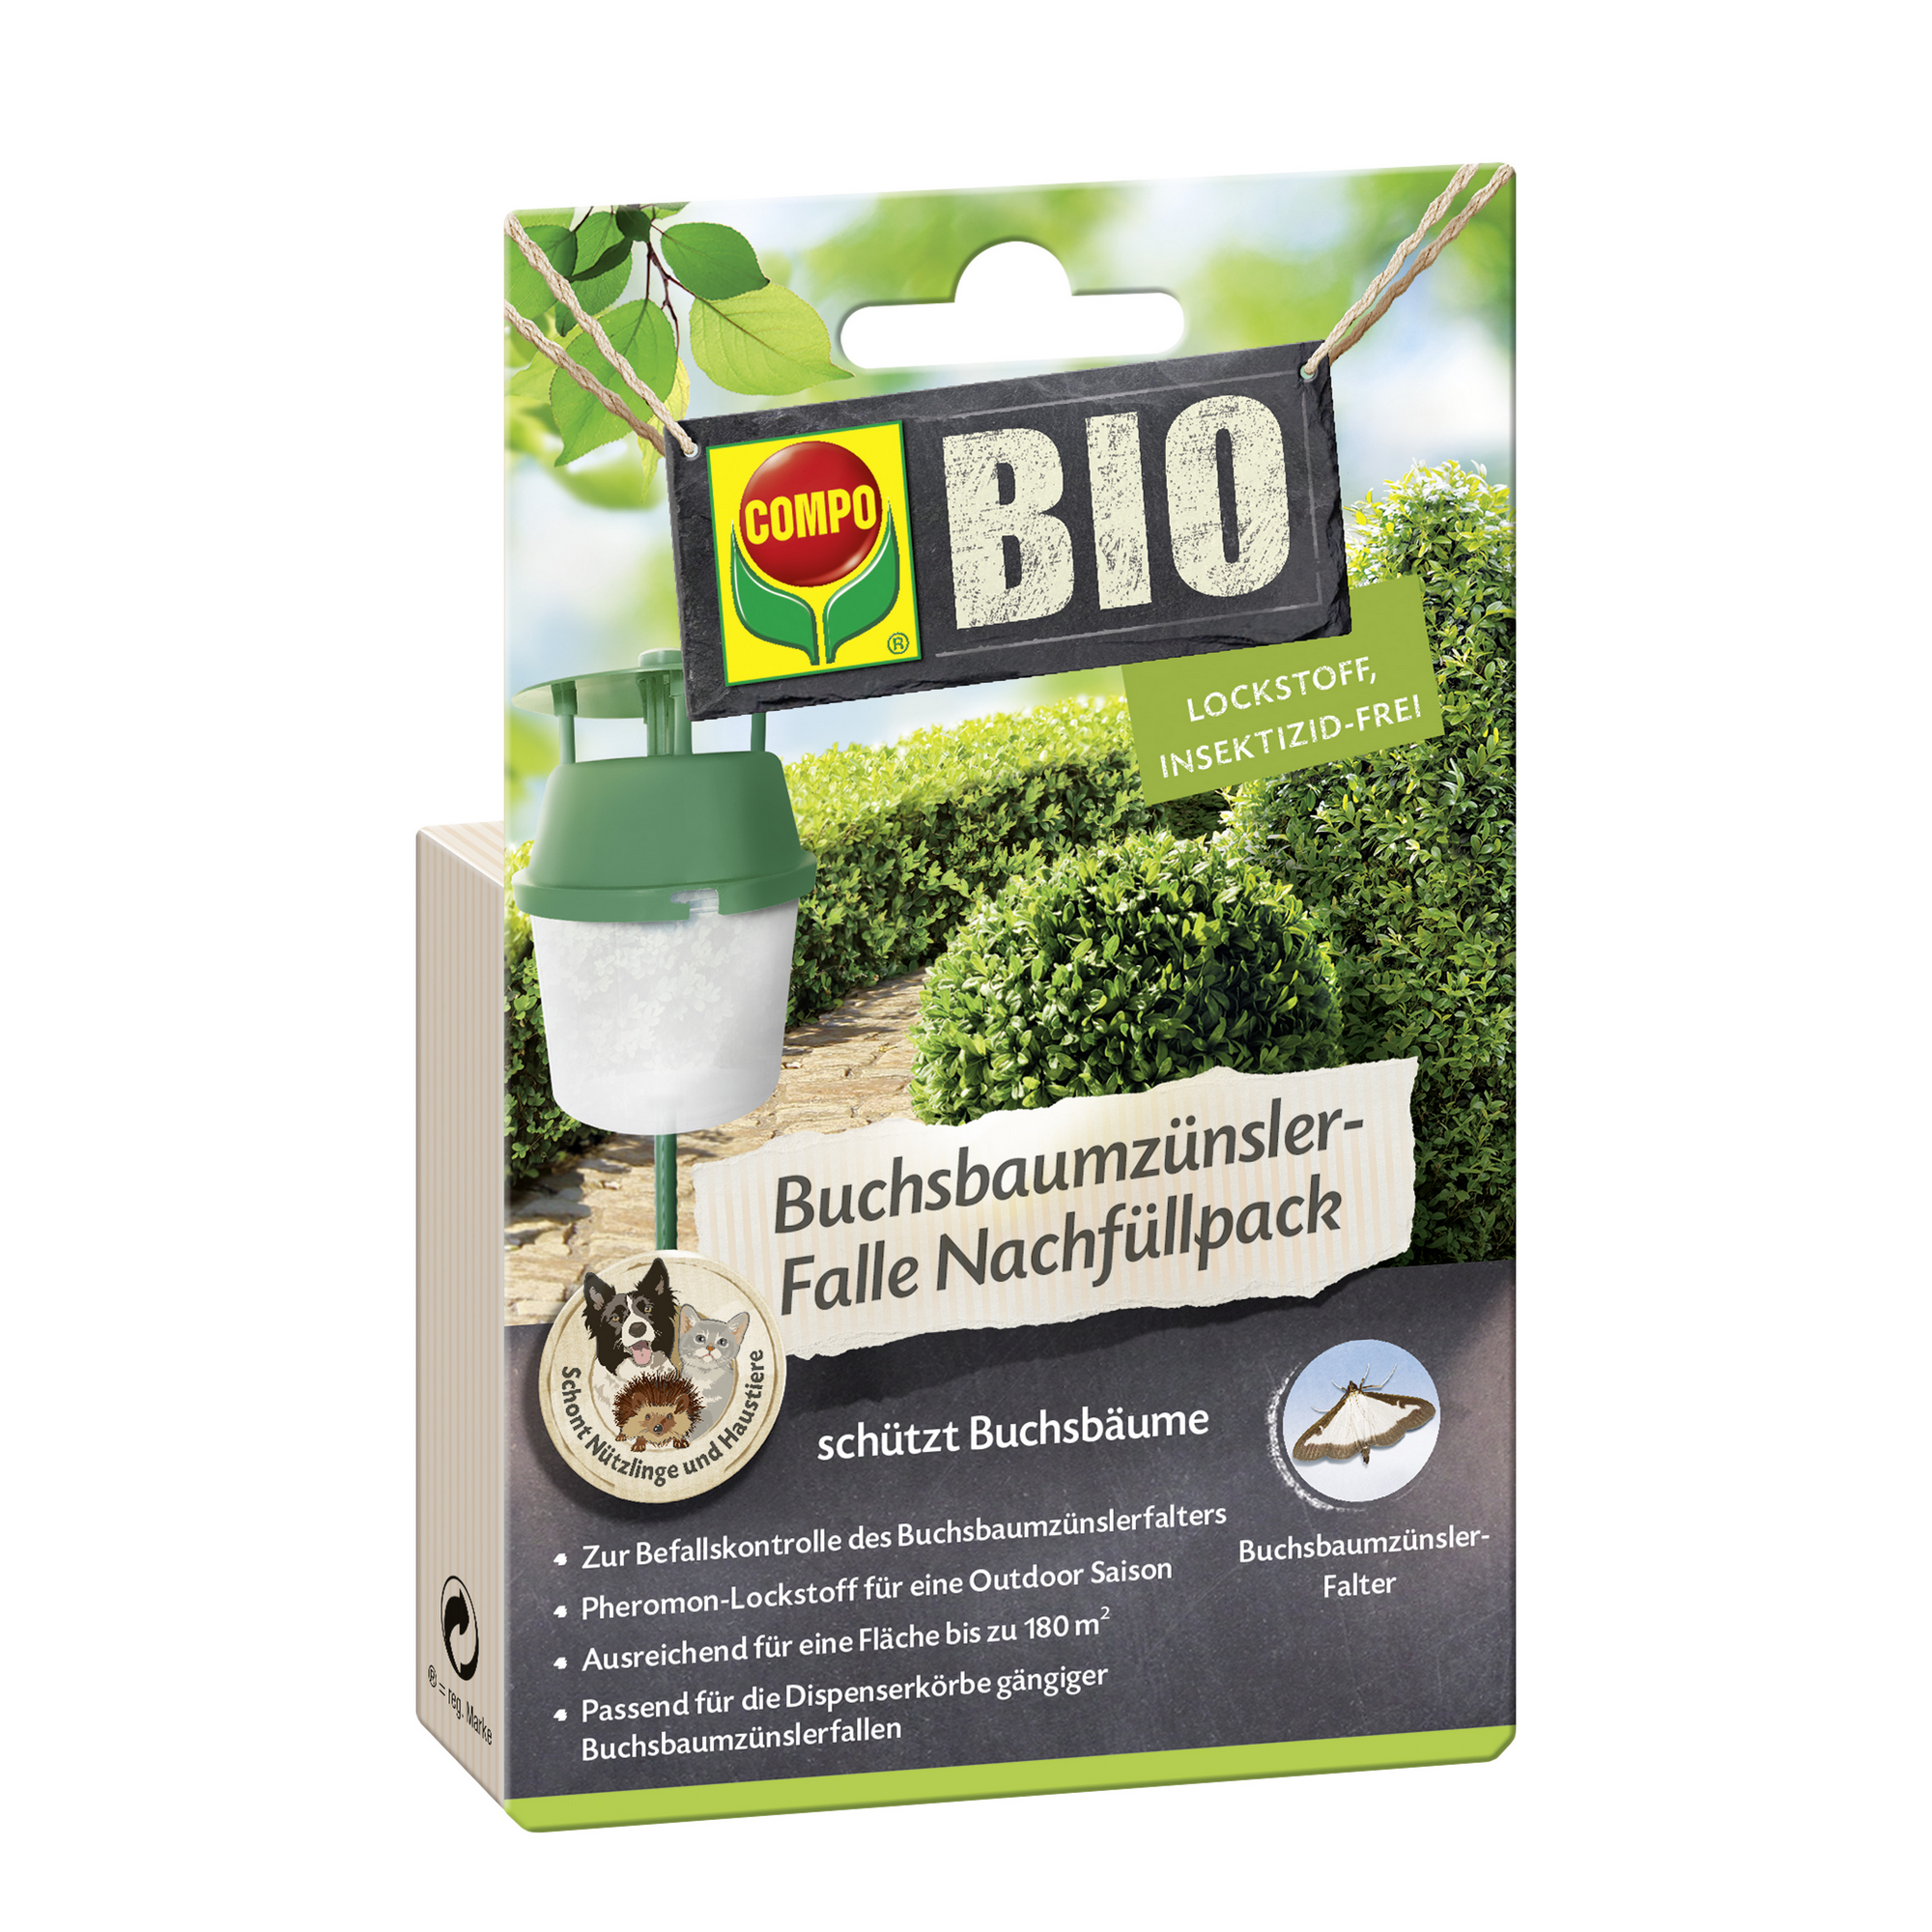 Bio-Buchsbaumzünsler-Falle Nachfüllpack + product picture